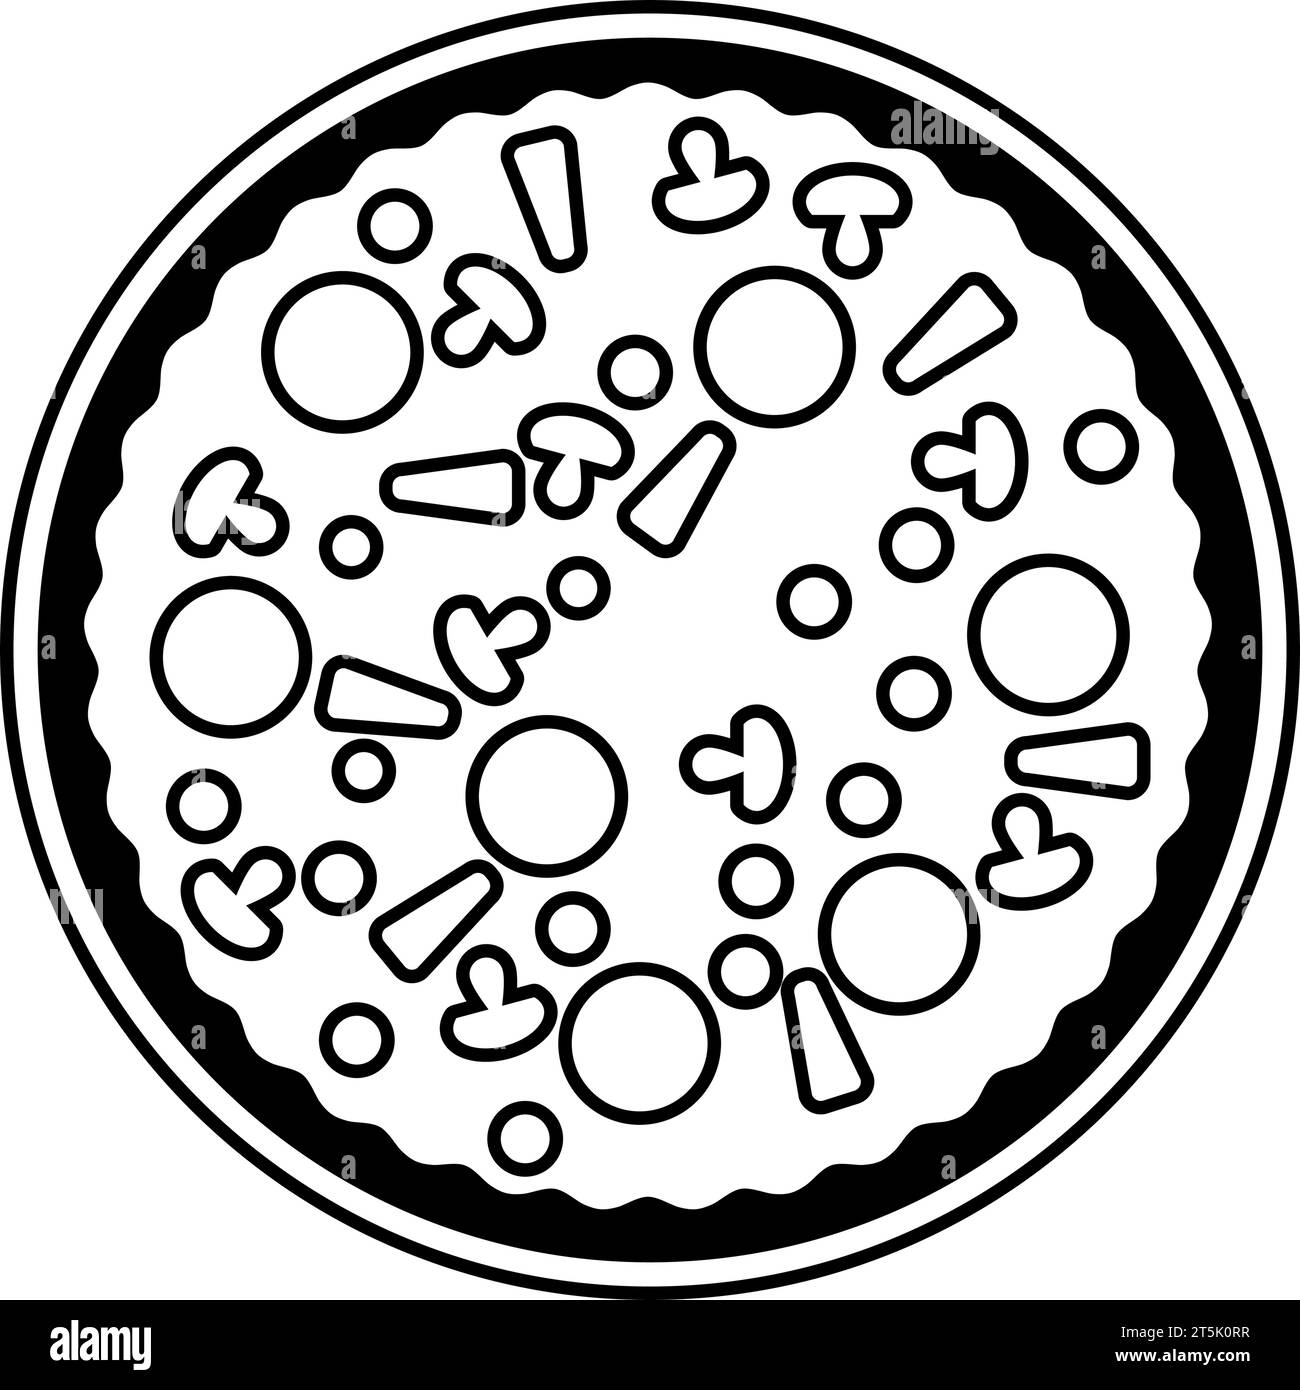 Vue de haut en bas d'une pizza ou tarte à pizza pour le concept de pizzeria dans le vecteur Illustration de Vecteur